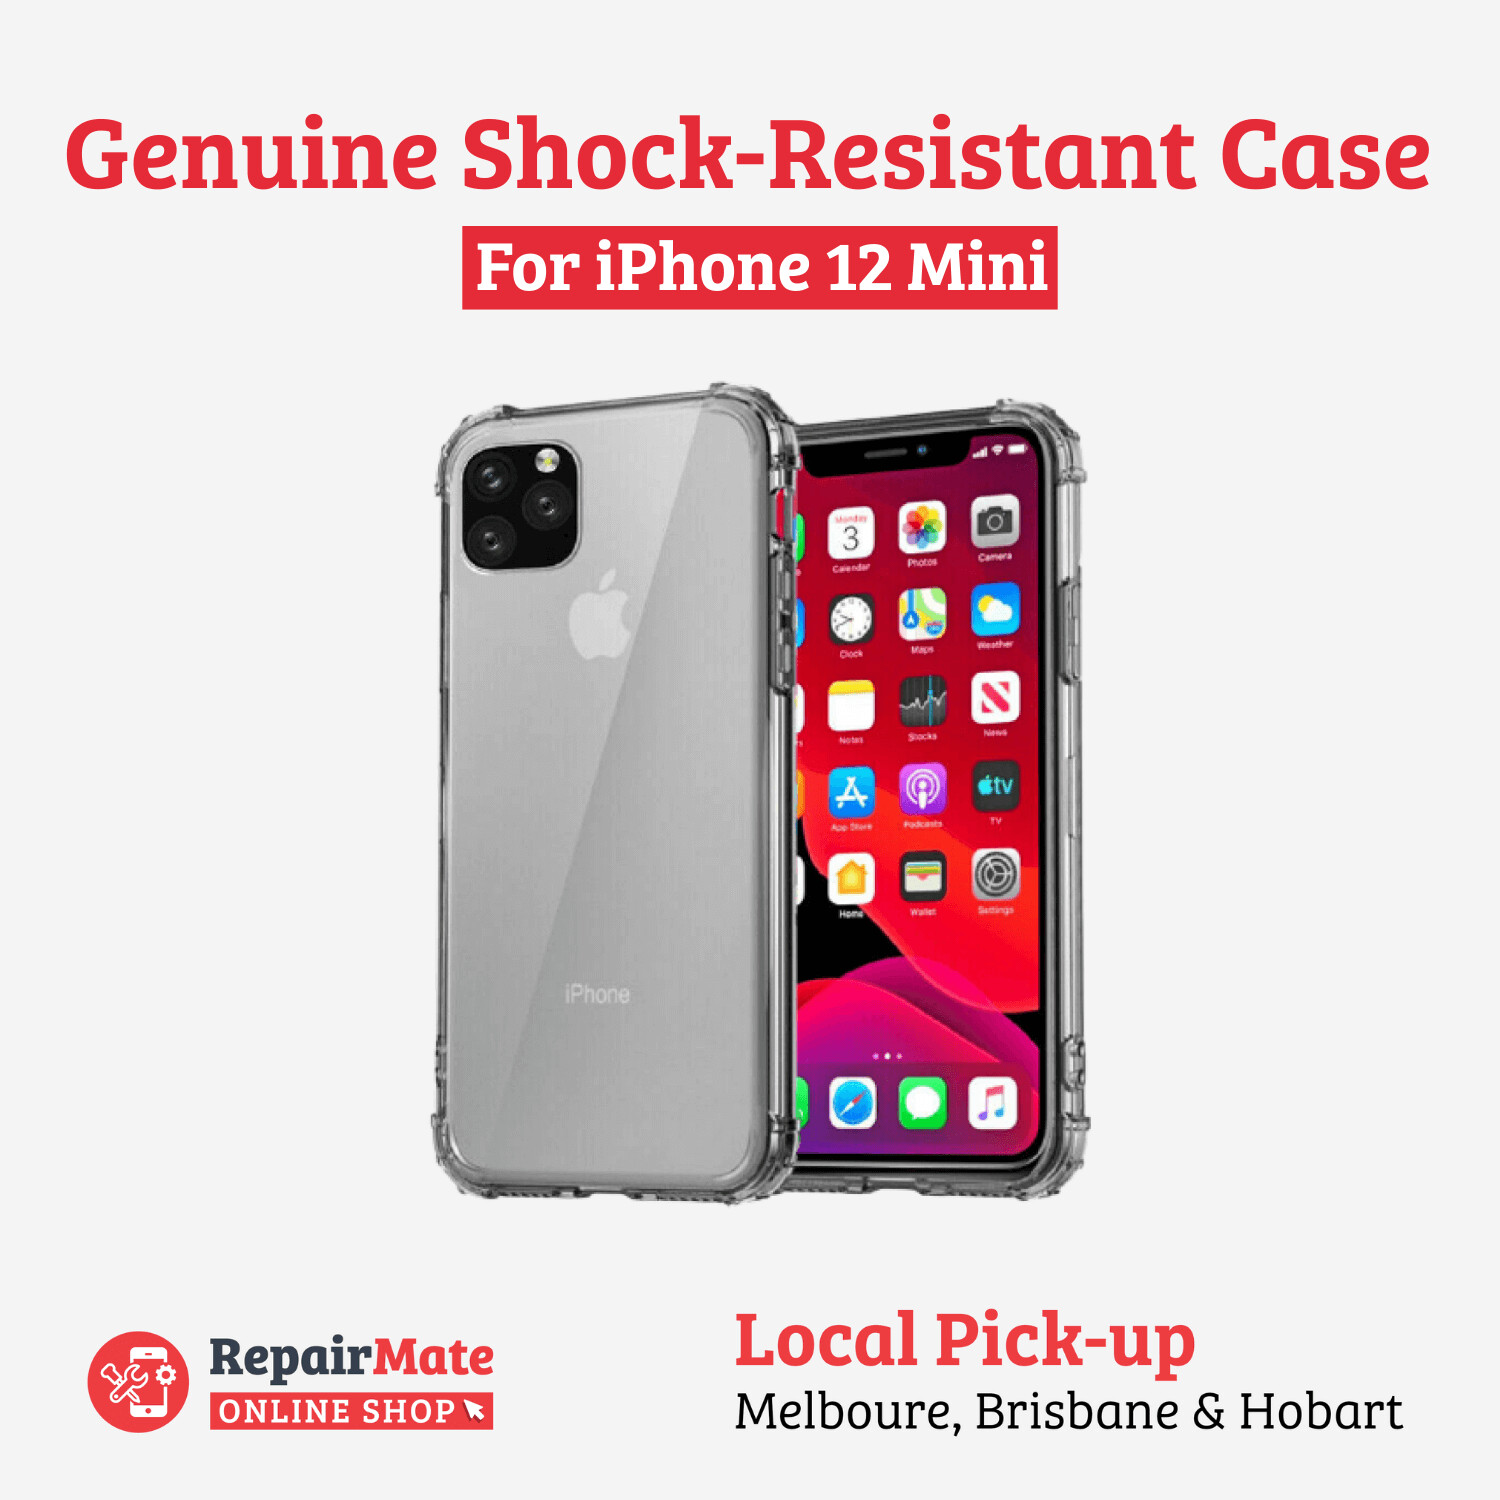 iPhone 12 Mini Genuine Shock-Resistant Case